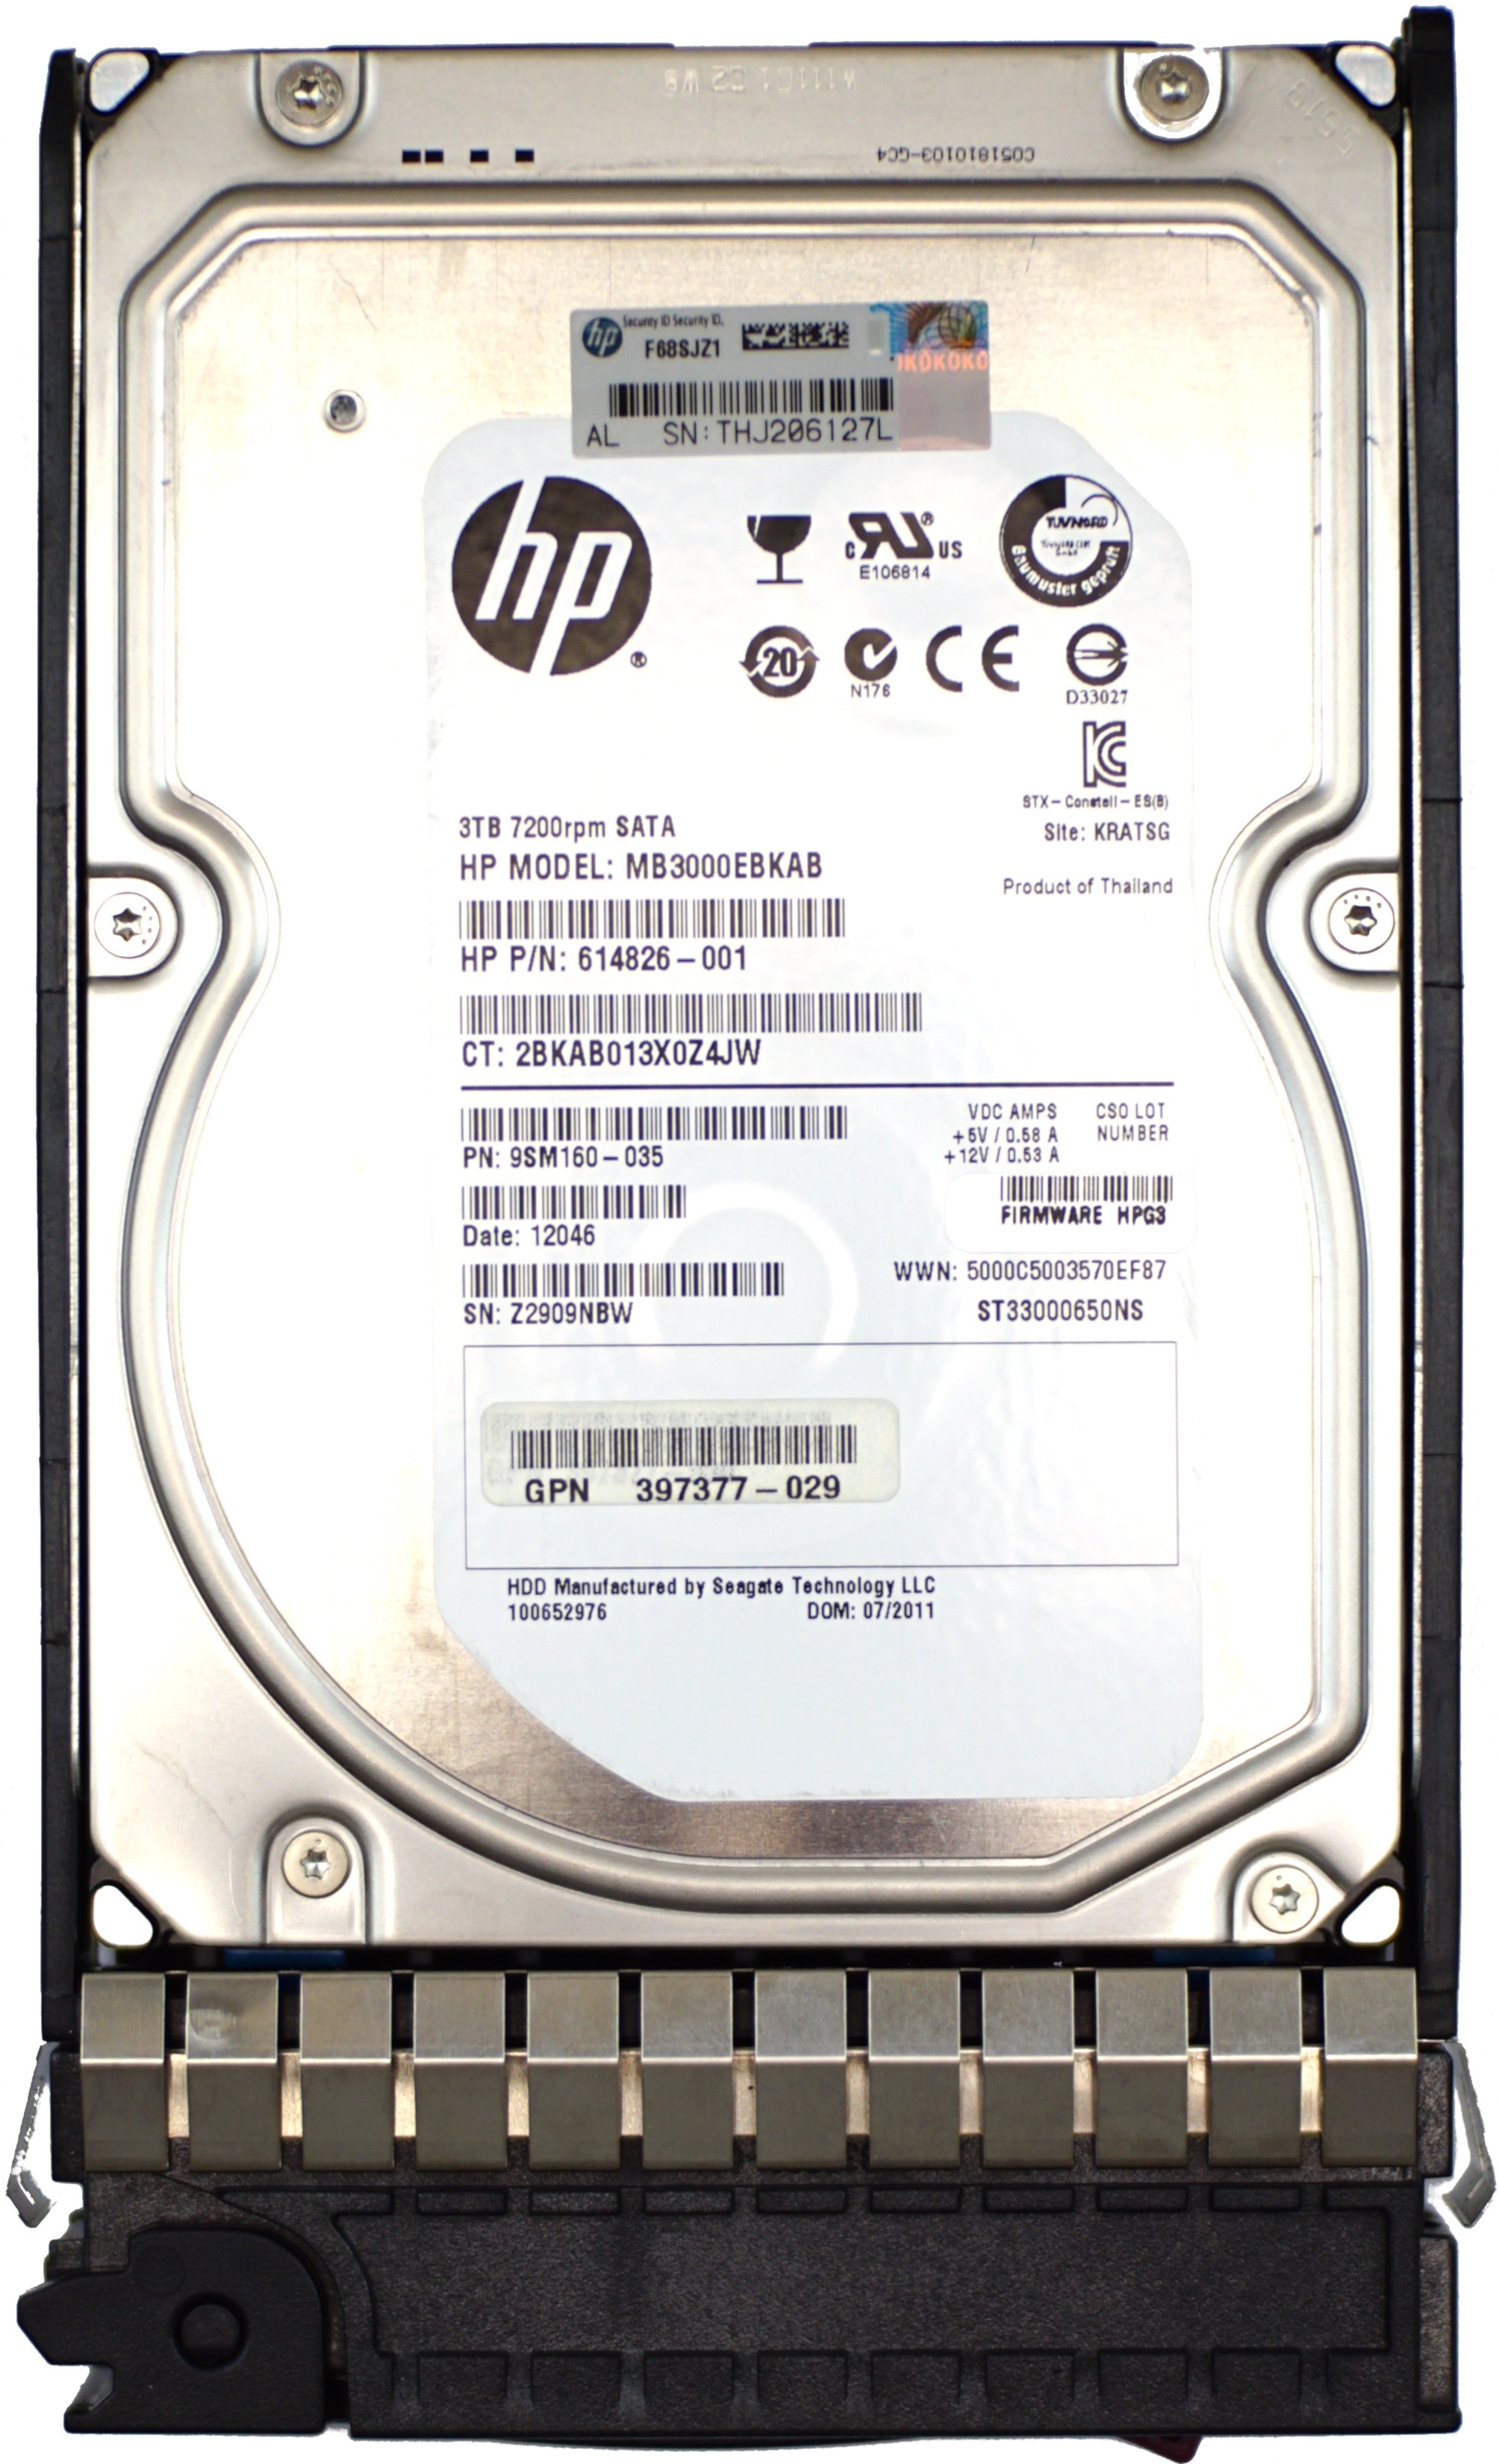 HP (614826-001) 3TB SATA II (LFF) 3Gb/s 7.2K HDD in G5/G6/G7 Hot-Swap Caddy